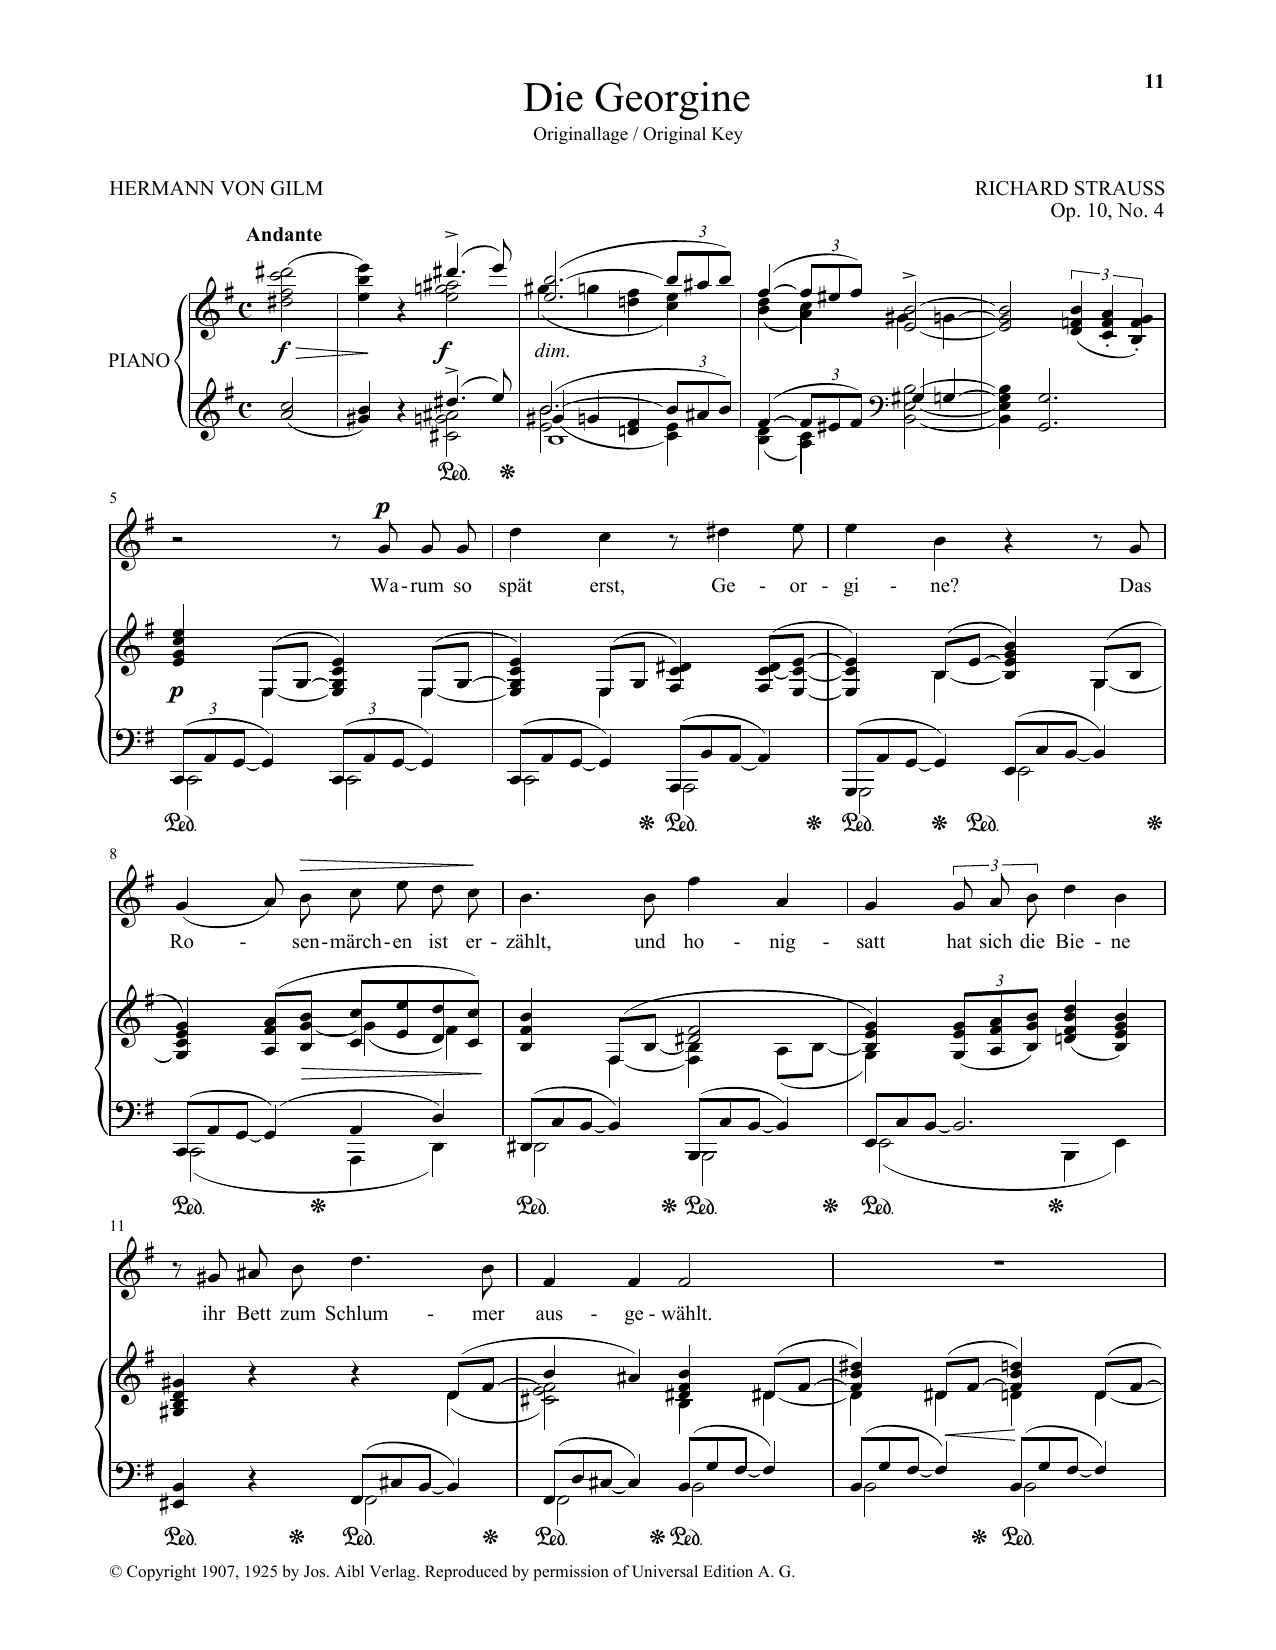 Download Richard Strauss Die Georgine (High Voice) Sheet Music